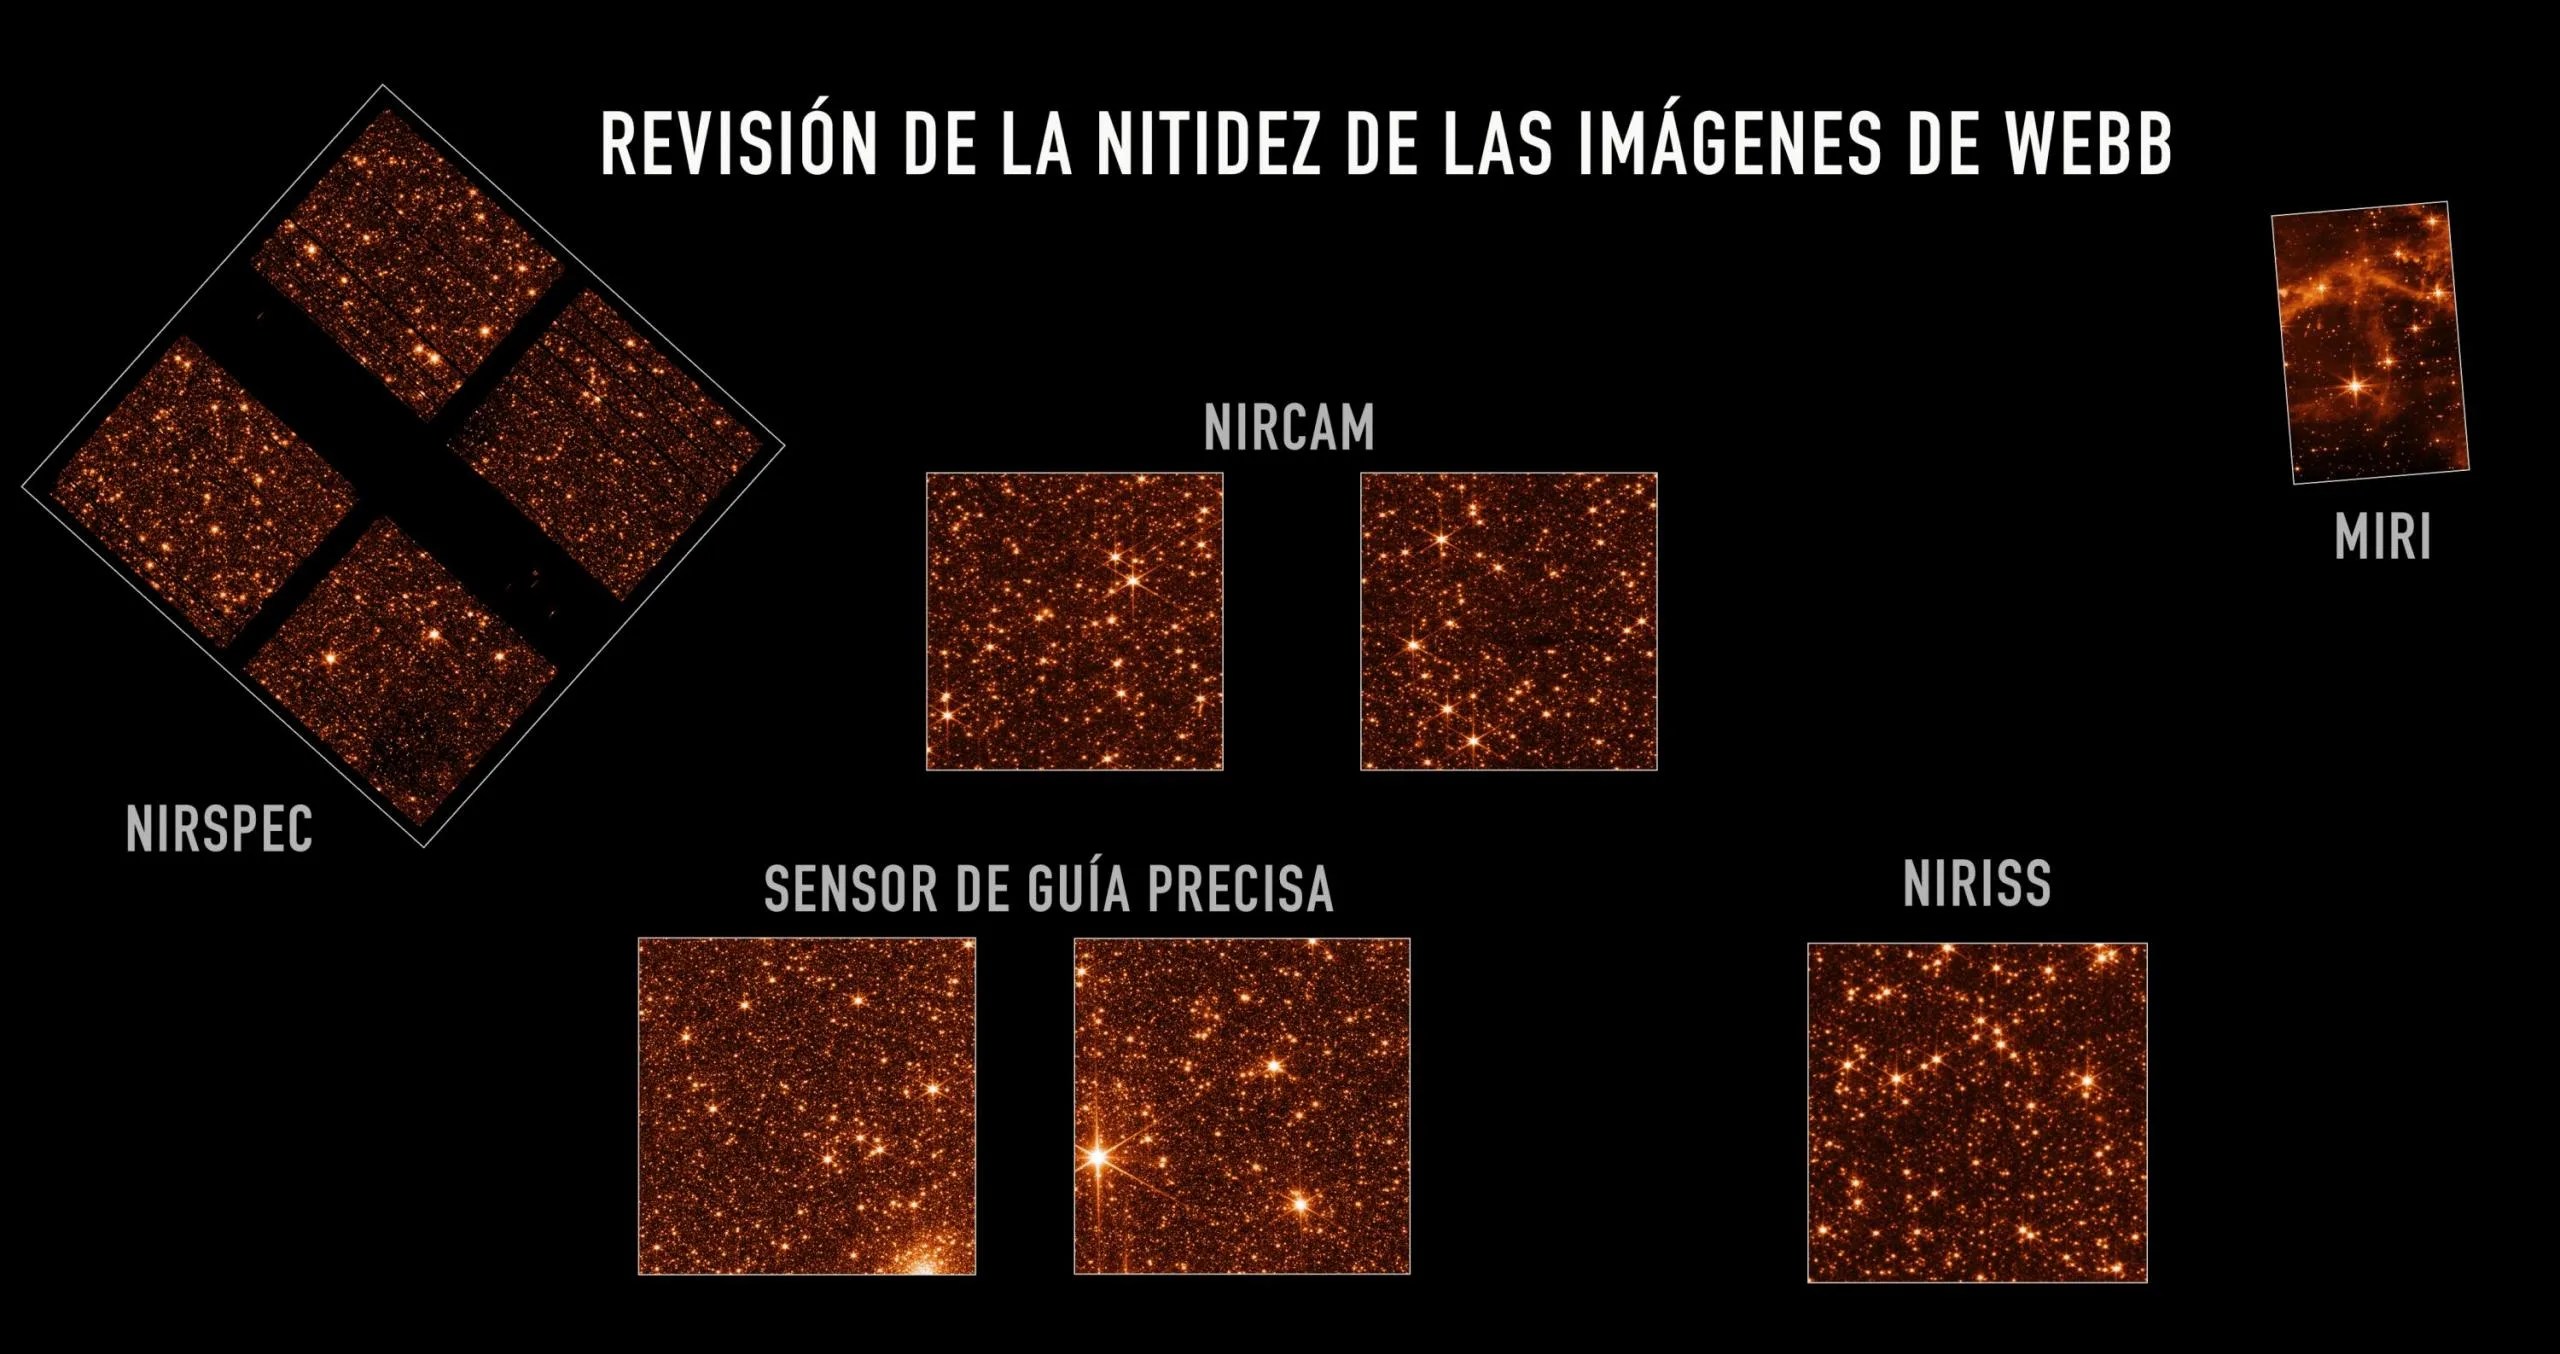 Cada recuadro muestra una vista desde uno de nuestros instrumentos de una parte de la Gran Nube de Magallanes. Cada imagen muestra muchas estrellas. Son imágenes de ingeniería que muestran que los espejos están alineados y enfocados. Las imágenes del telescopio están coloreadas en un tono rojizo, elegido para optimizar el contraste visual.